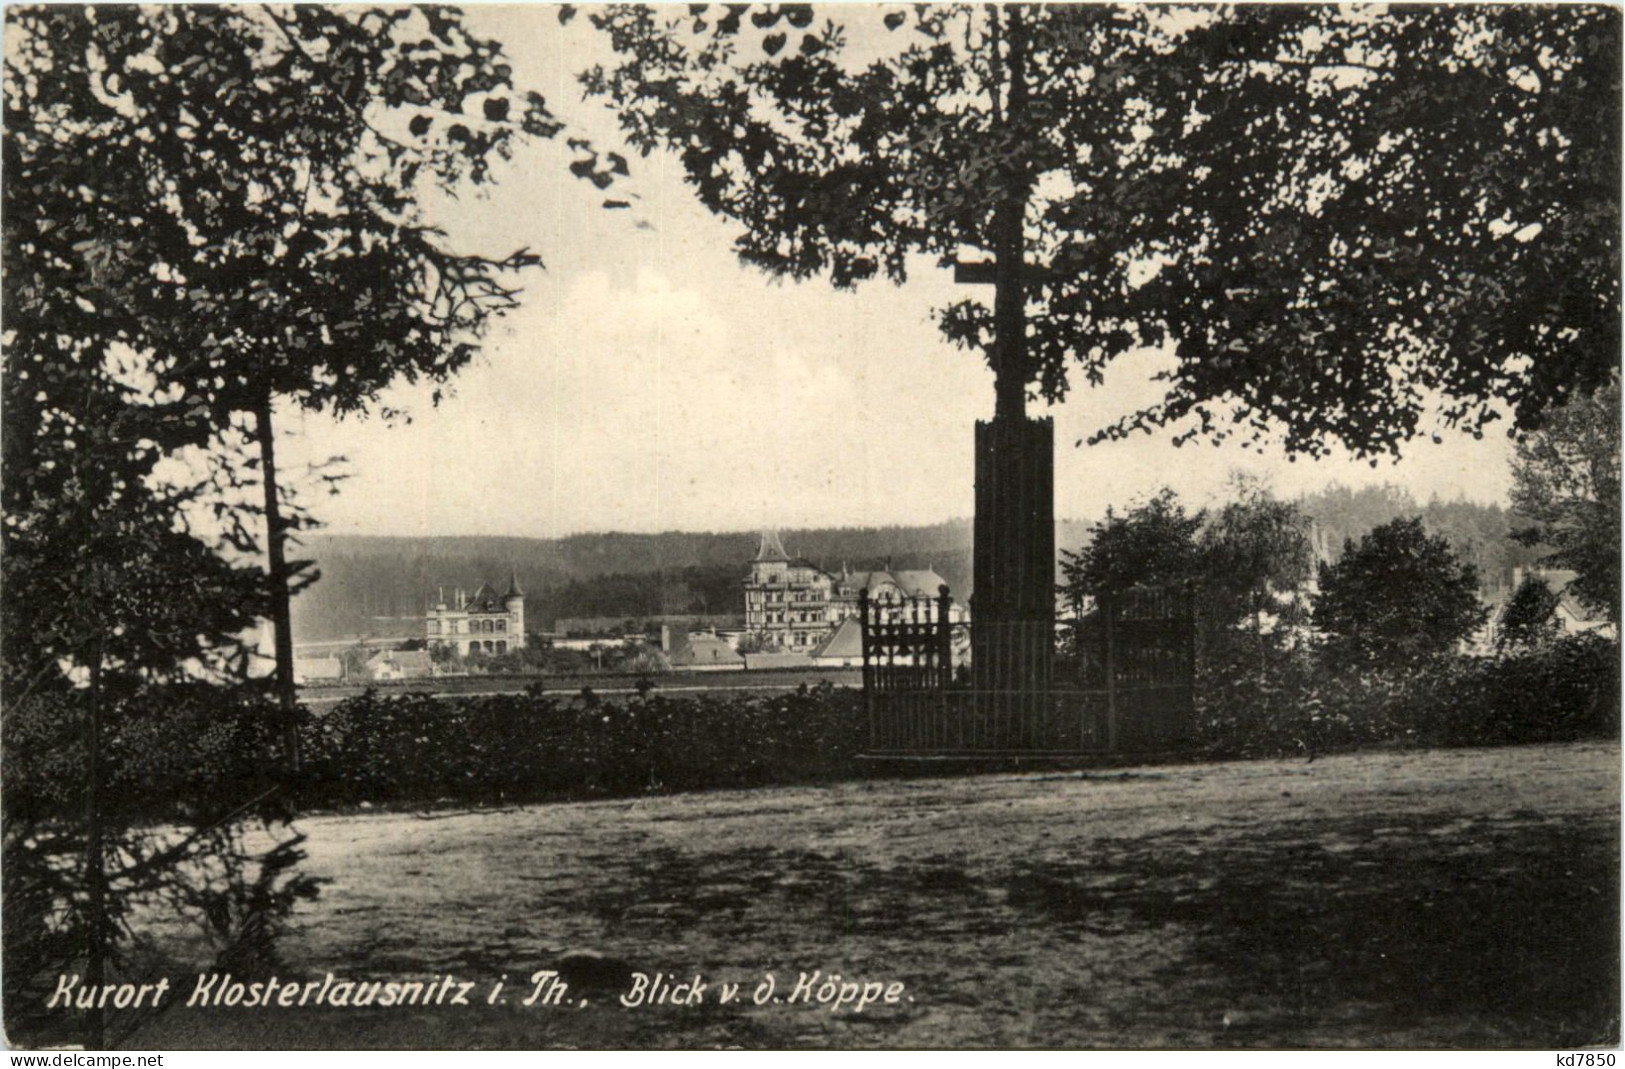 Klosterlausnitz, Blick V.d. Köppe - Bad Klosterlausnitz